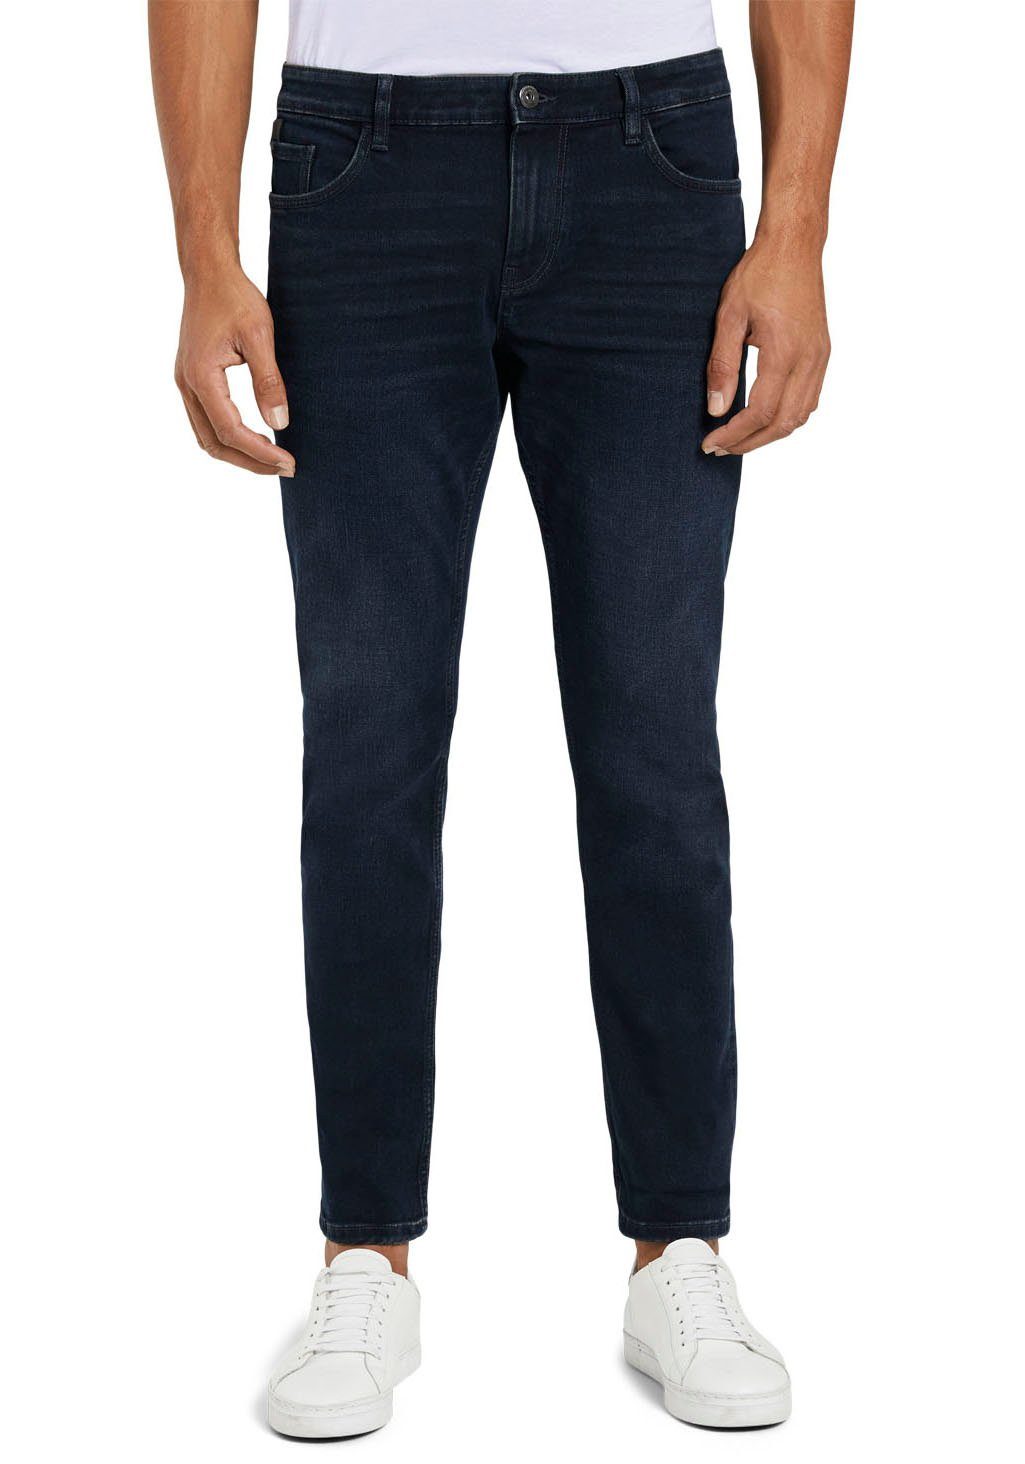 Josh Reißverschluss blue TAILOR black mit dark stone 5-Pocket-Jeans TOM